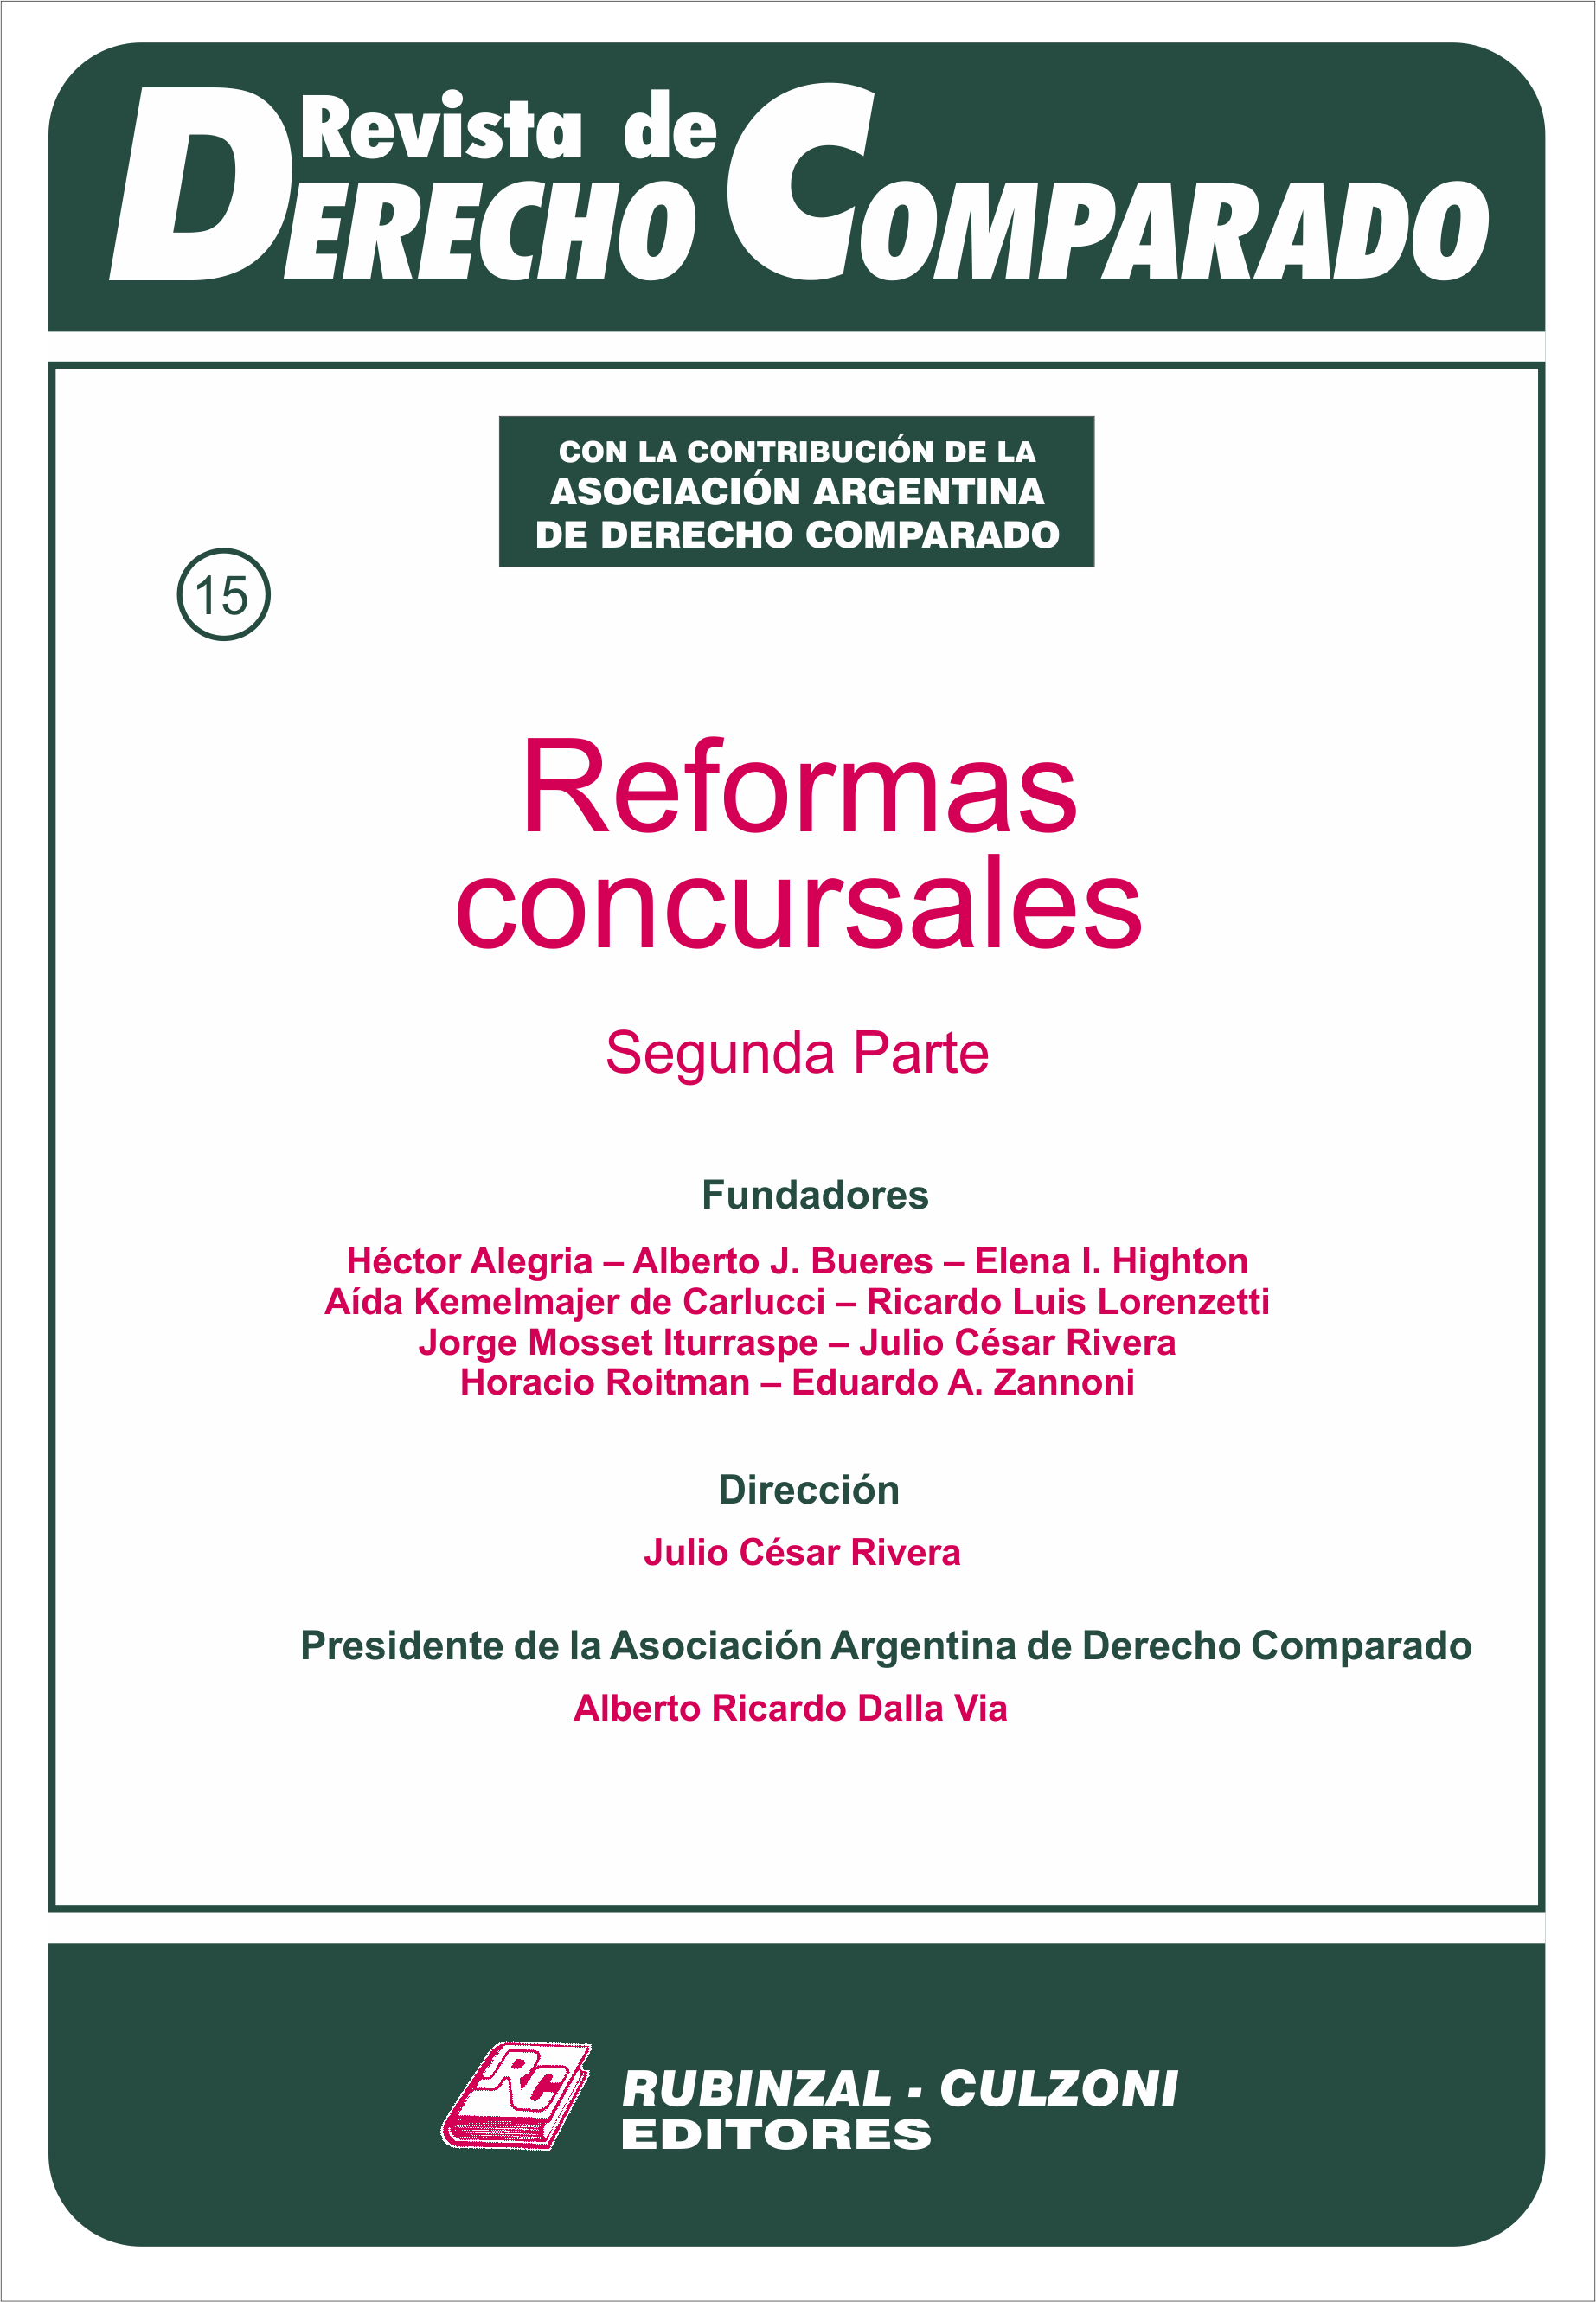 Revista de Derecho Comparado - Reformas concursales 